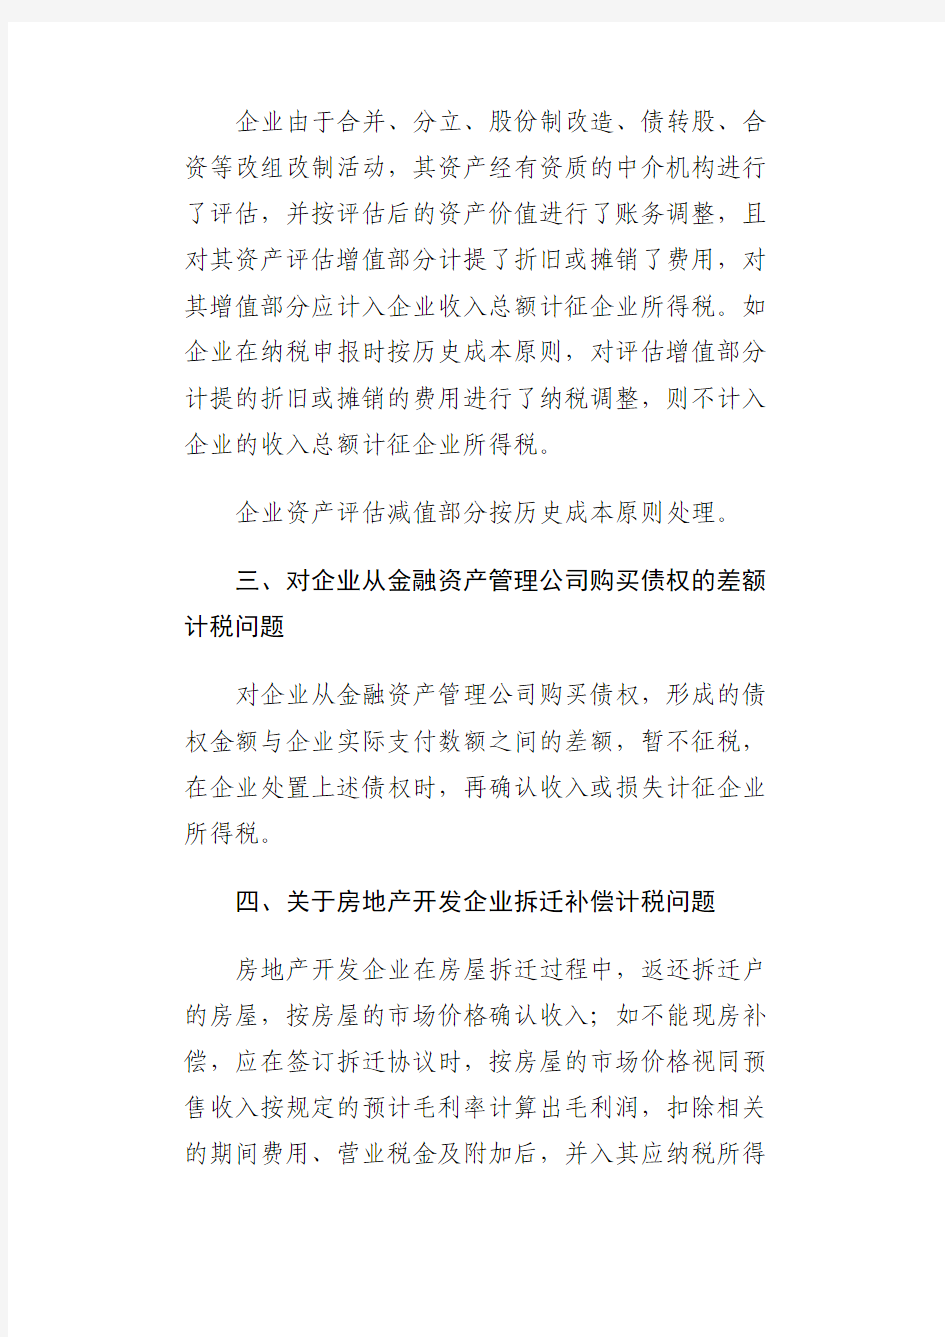 冀地公告2014  4号河北省地方税务局关于企业所得税若干业务问题的公告